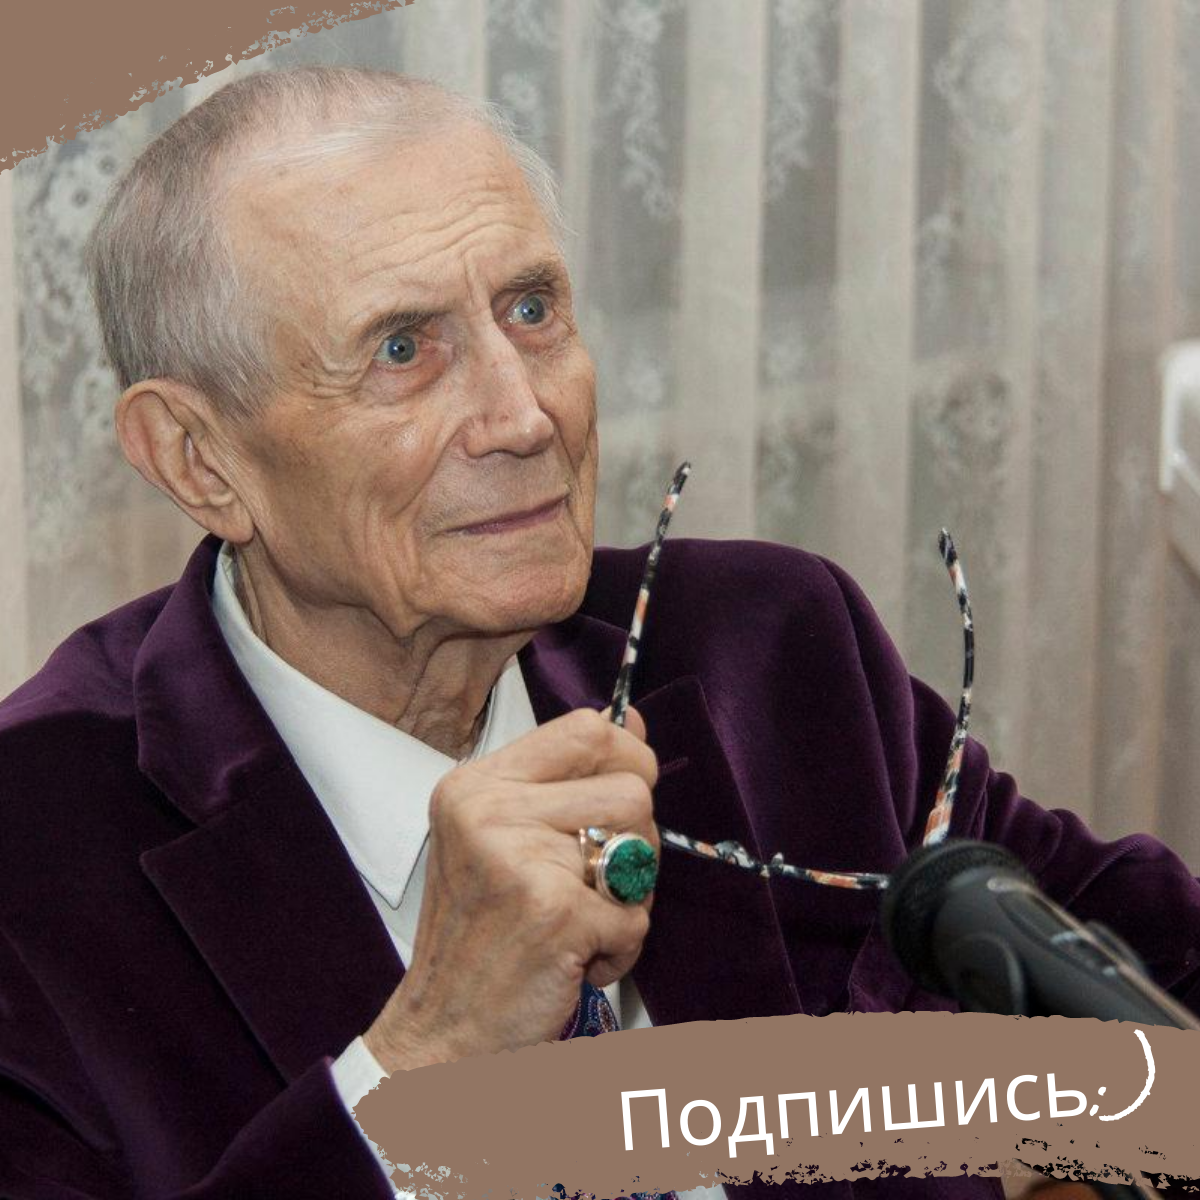 Евгений Евтушенко: «Поэт в России — больше, чем поэт»